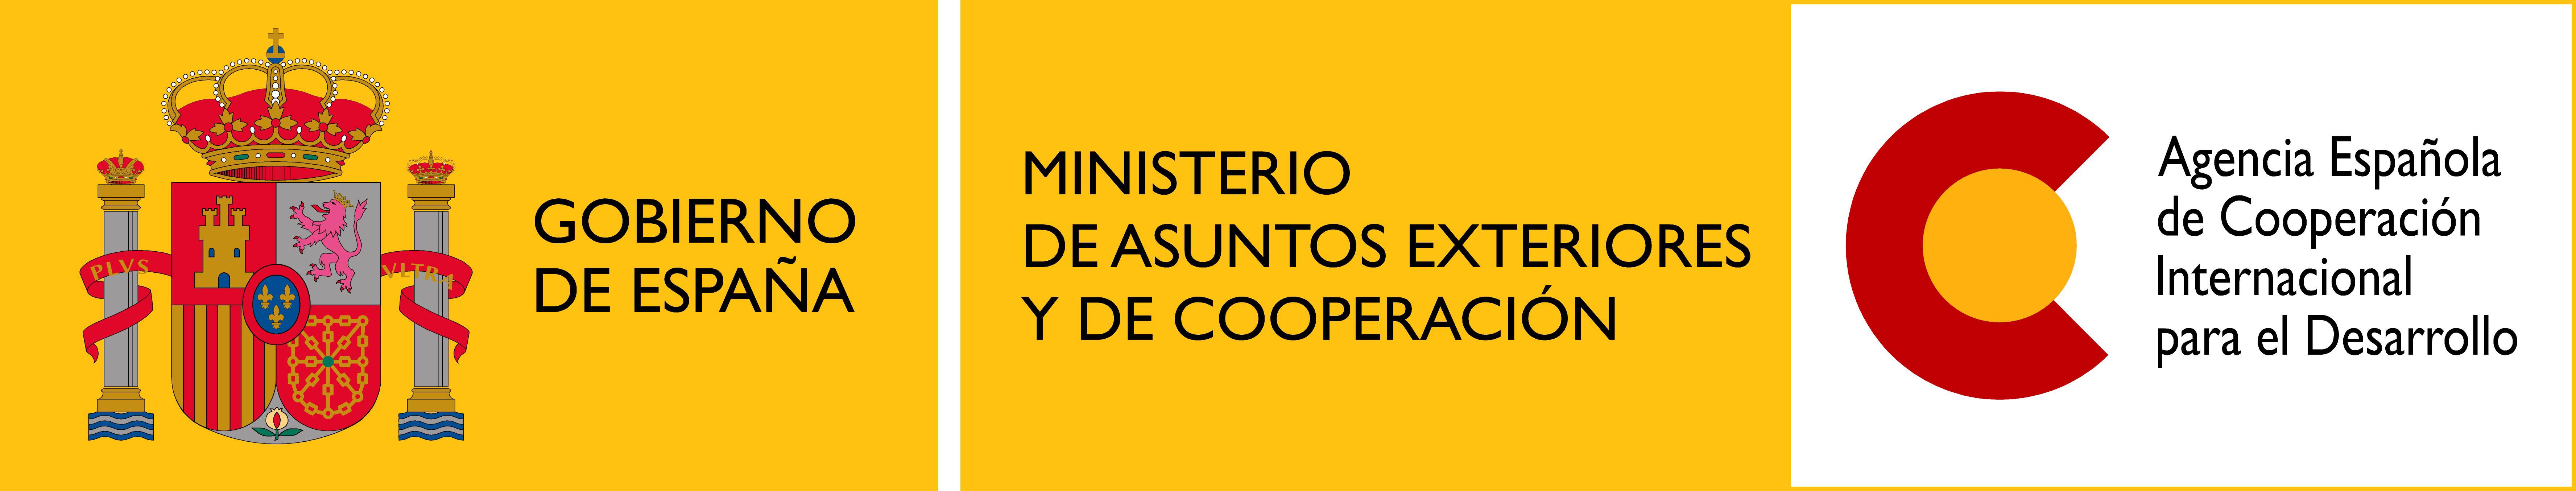 Embajada de España (Irlanda). Agencia Española de Cooperación Internacional (AECID)